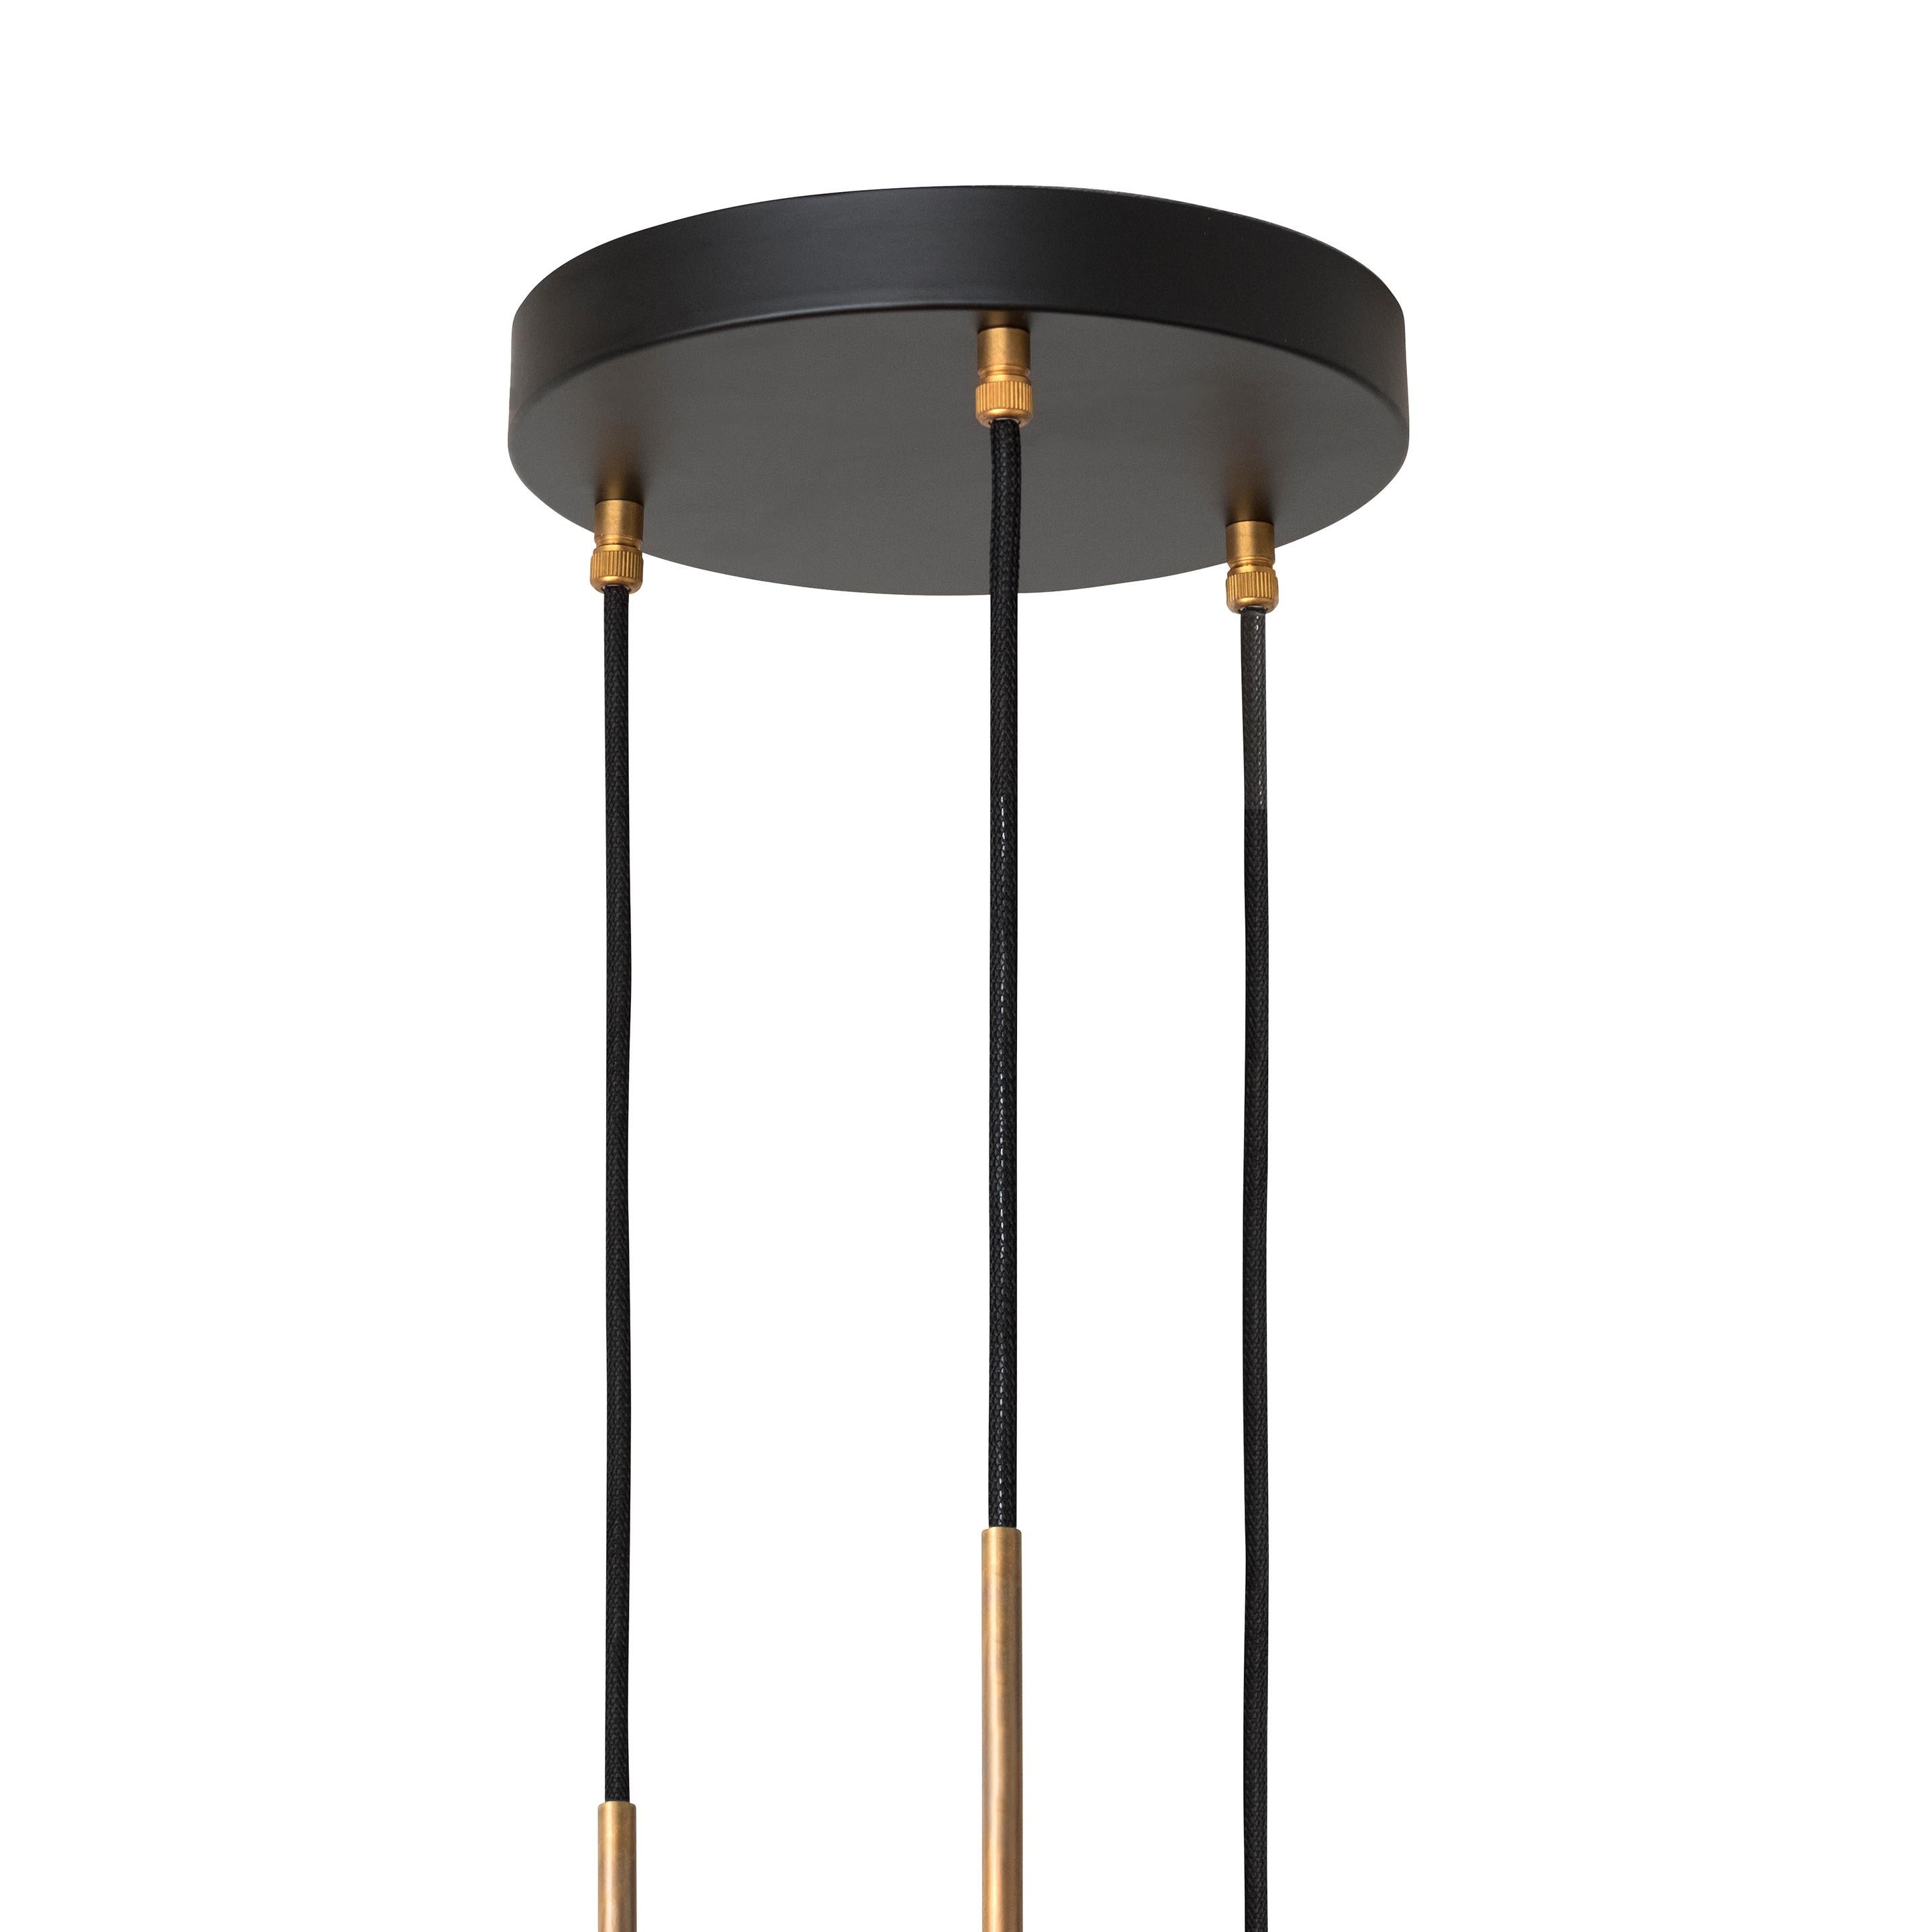 Johan Carpner STAV 3, a Black Brass Celing Lamp by Konsthantverk Tyringe (Moderne)